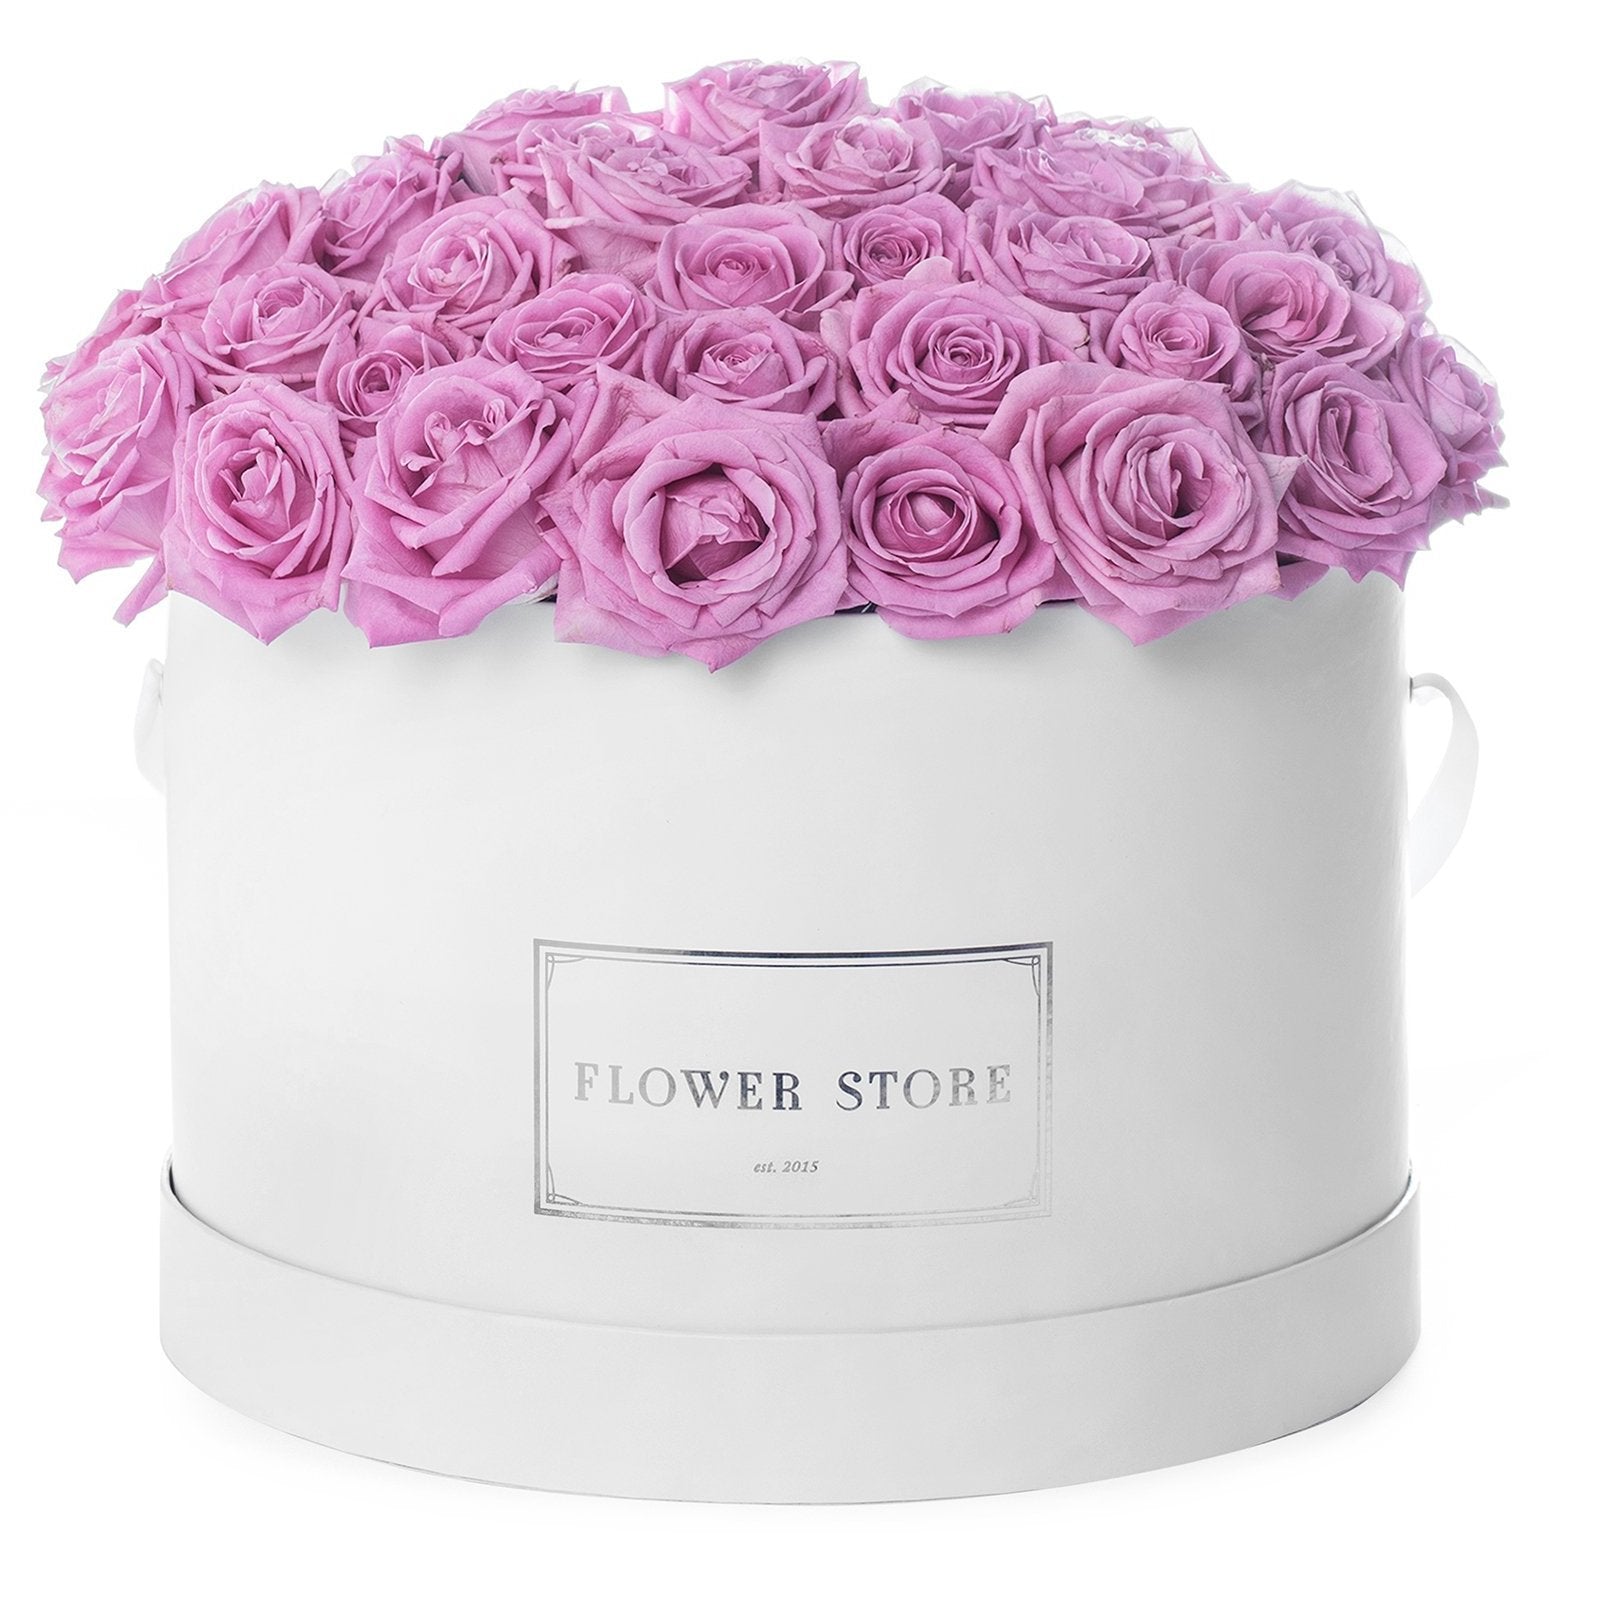 Белая большая коробочка с розовыми вечными розами.